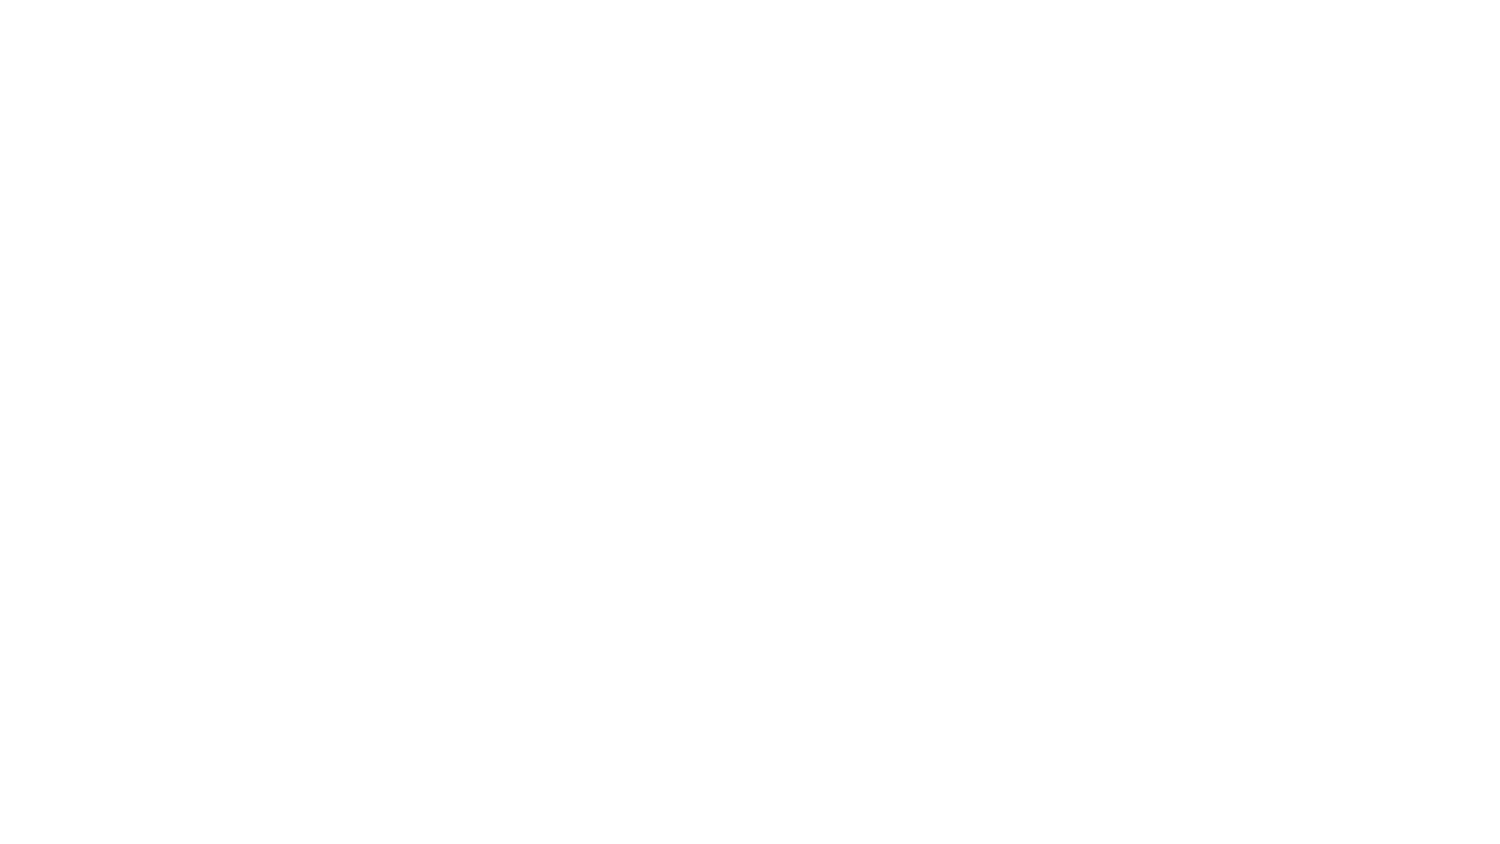 Scott Hallatt